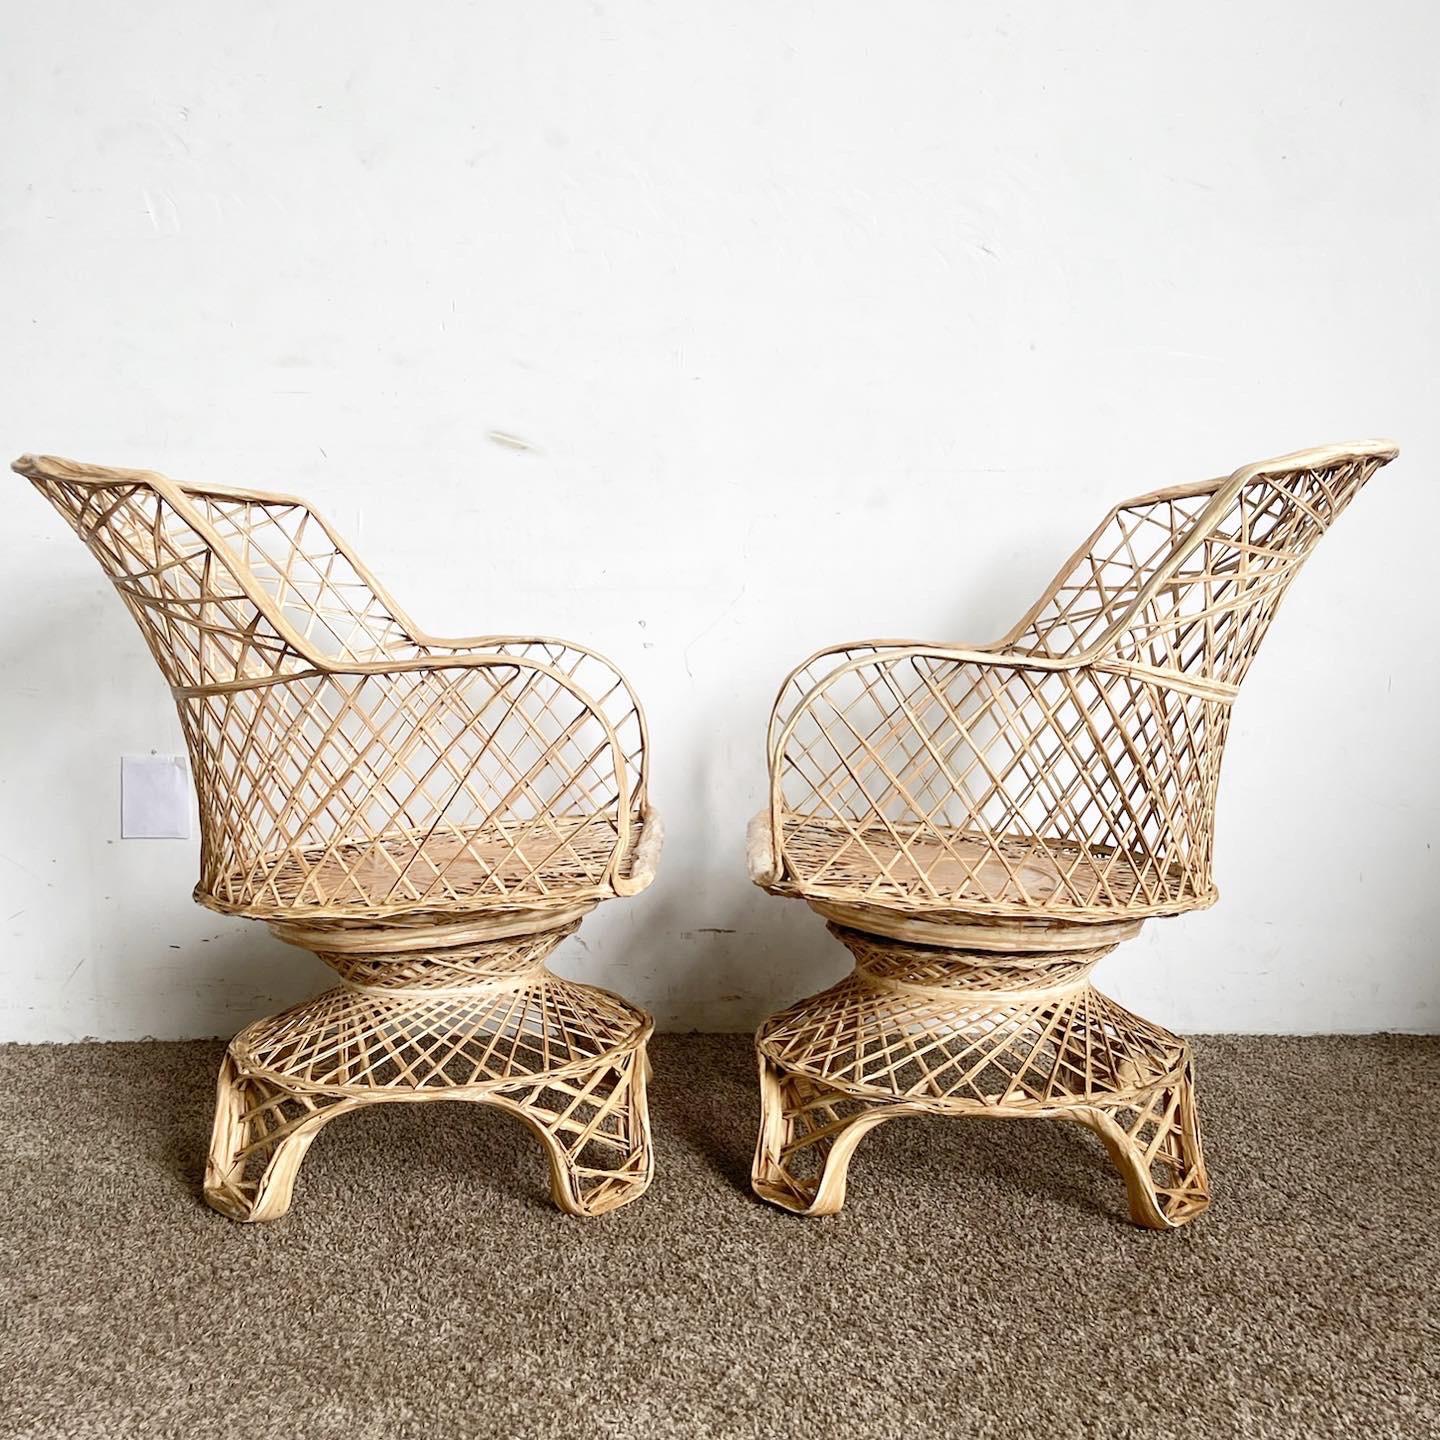 Der Charme der Mid Century Modern Fiberglas-Stühle, die als Vierer-Set präsentiert werden, verleiht Ihrem Raum eine besondere Note. Diese bemerkenswerten Stühle strahlen mit ihren anmutigen Kurven und ihrer tadellosen Kunstfertigkeit aus gesponnenem